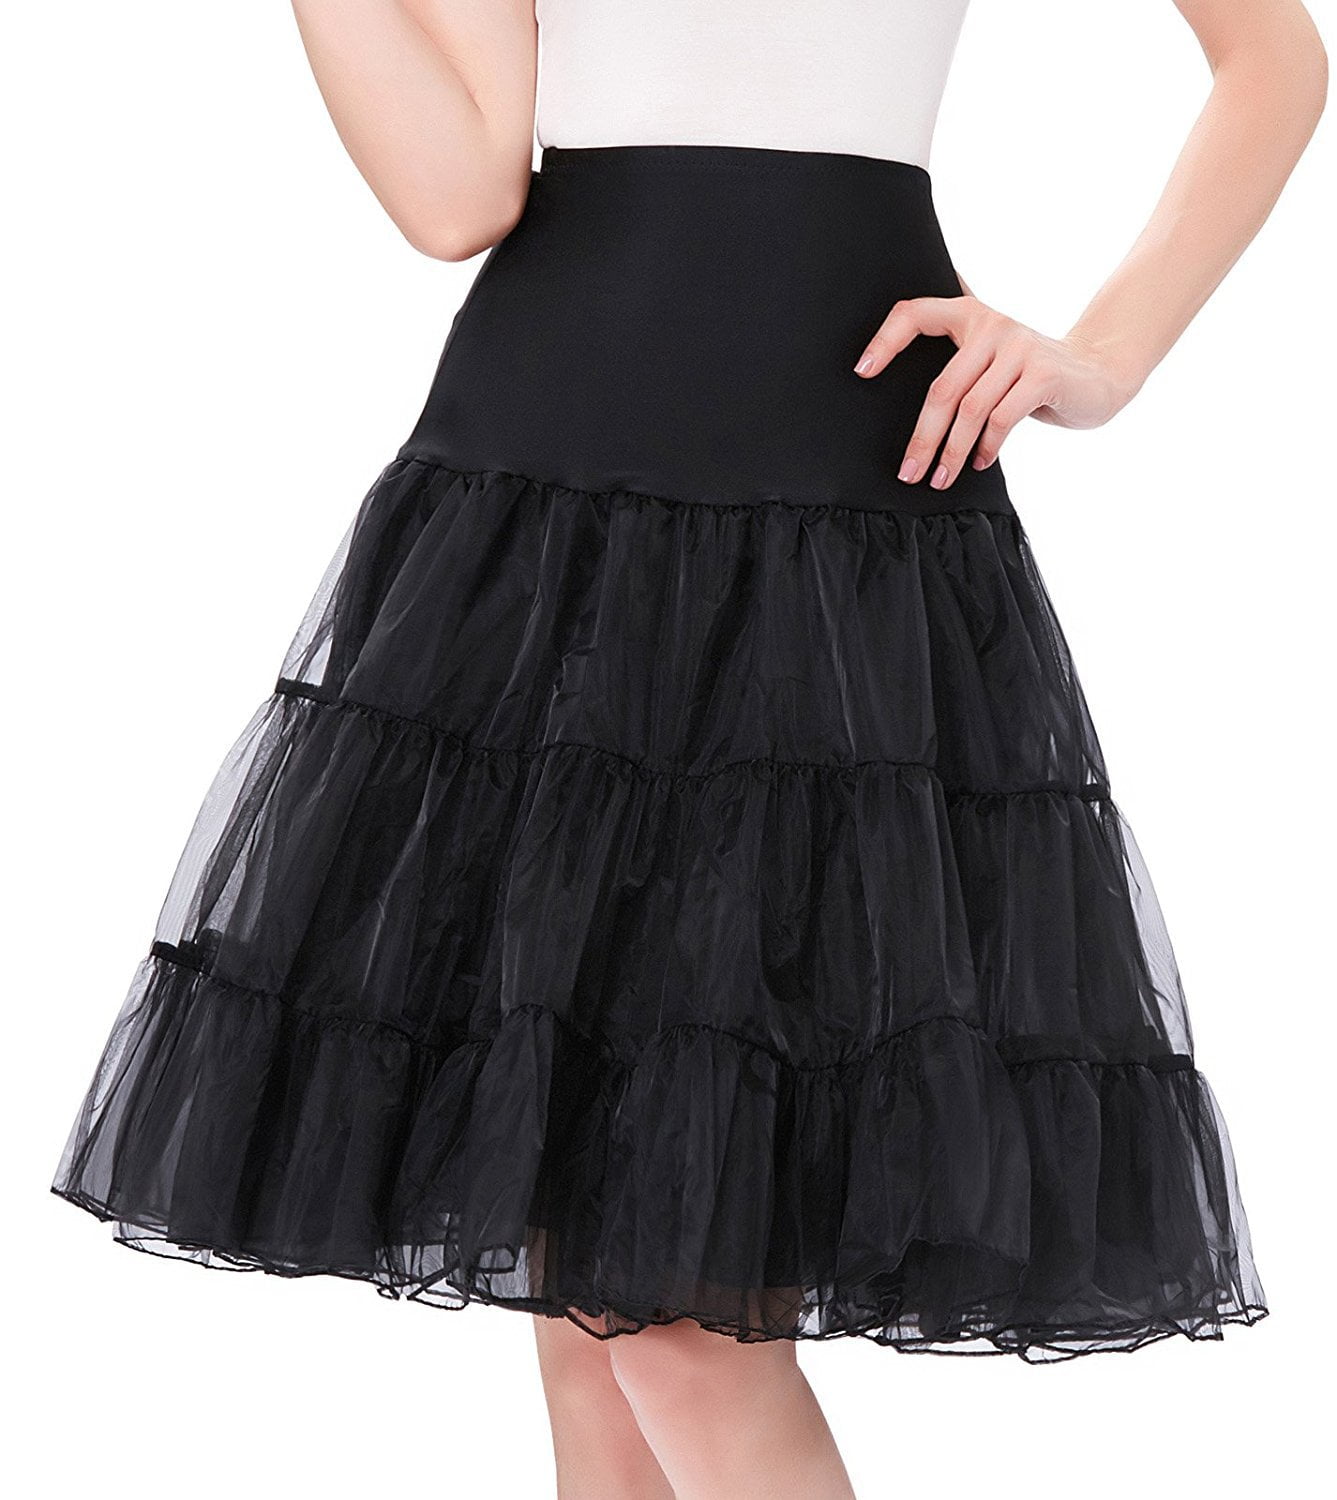 RULTA 50s Vintage Swing Petticoat Rockabilly 26" Fancy Net Underskirt Short A1